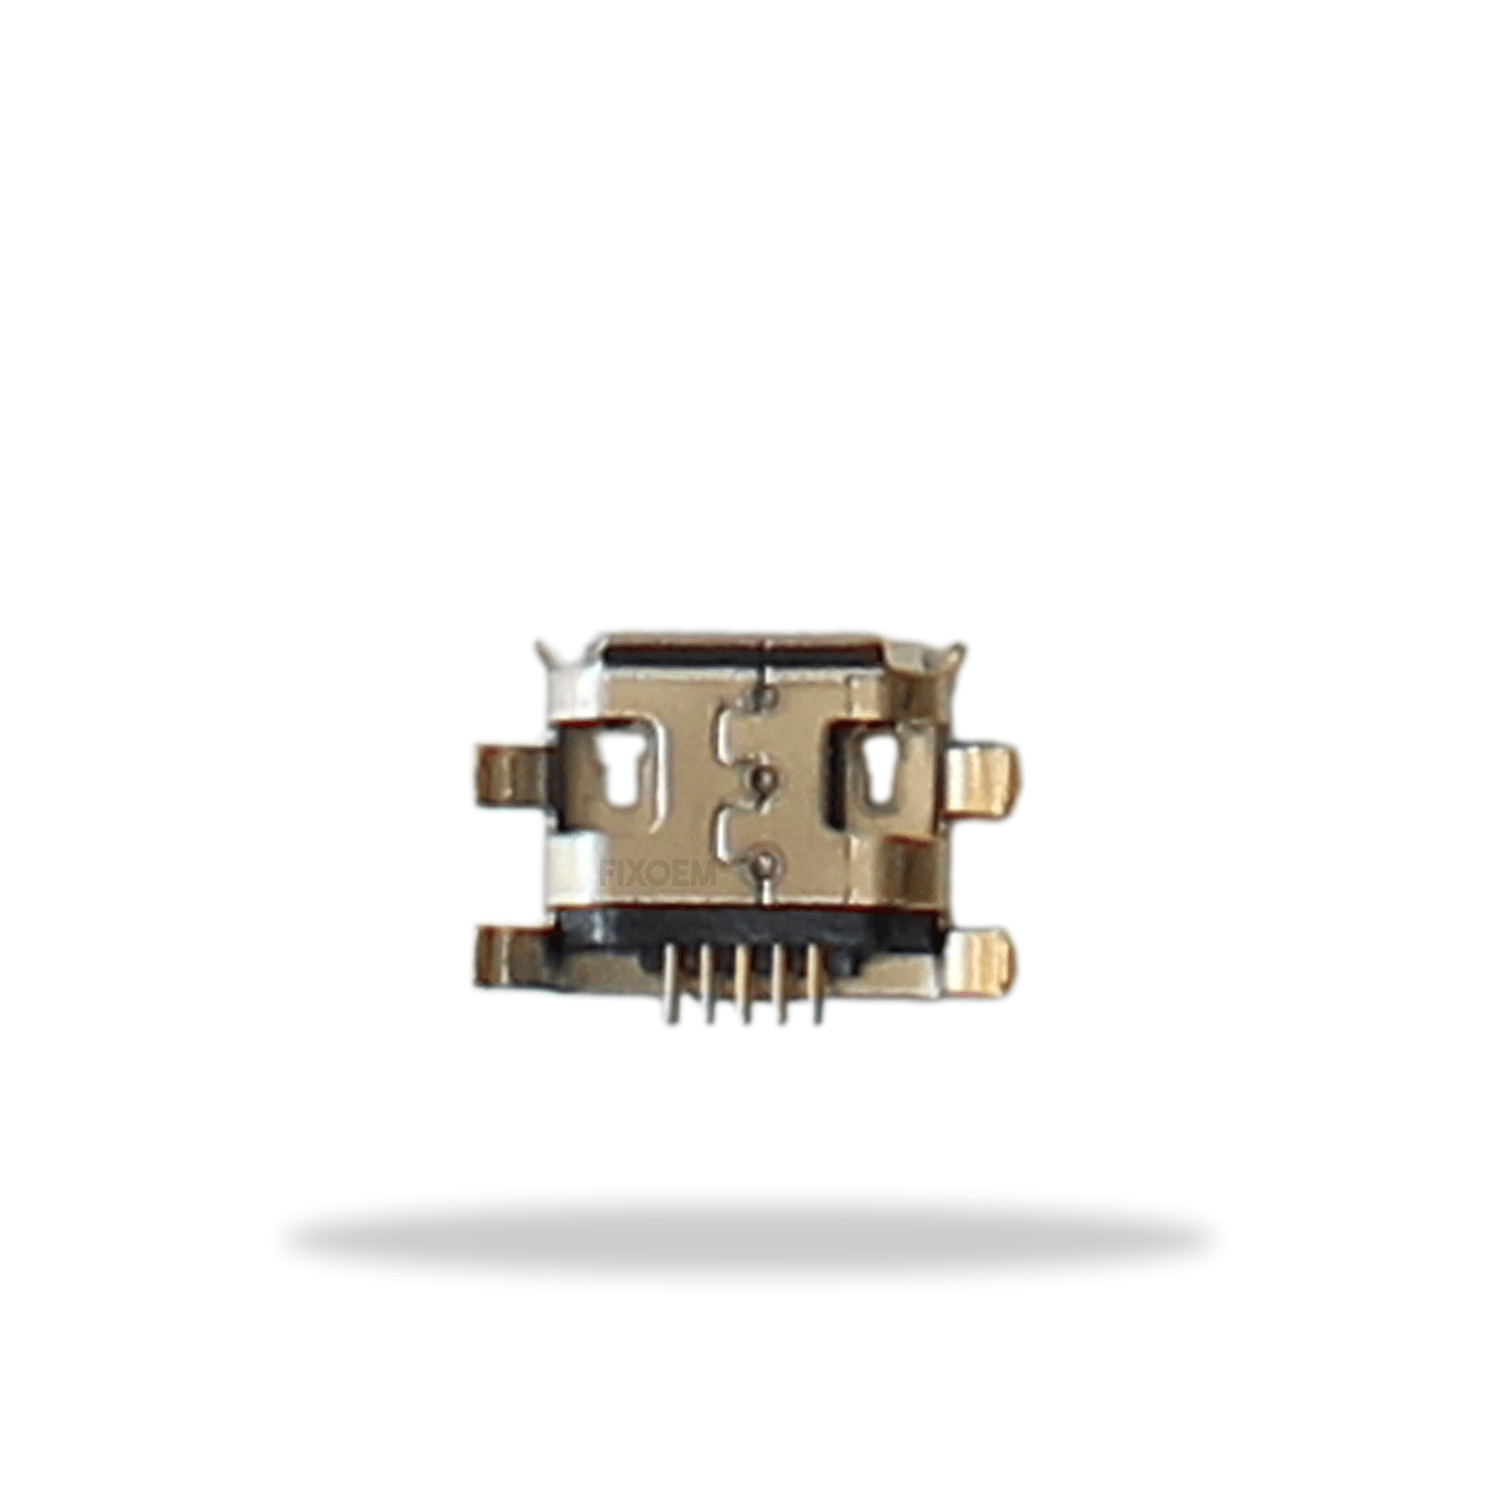 Pin Carga Zte V8 Mini G1 5Pz a solo $ 30.00 Refaccion y puestos celulares, refurbish y microelectronica.- FixOEM